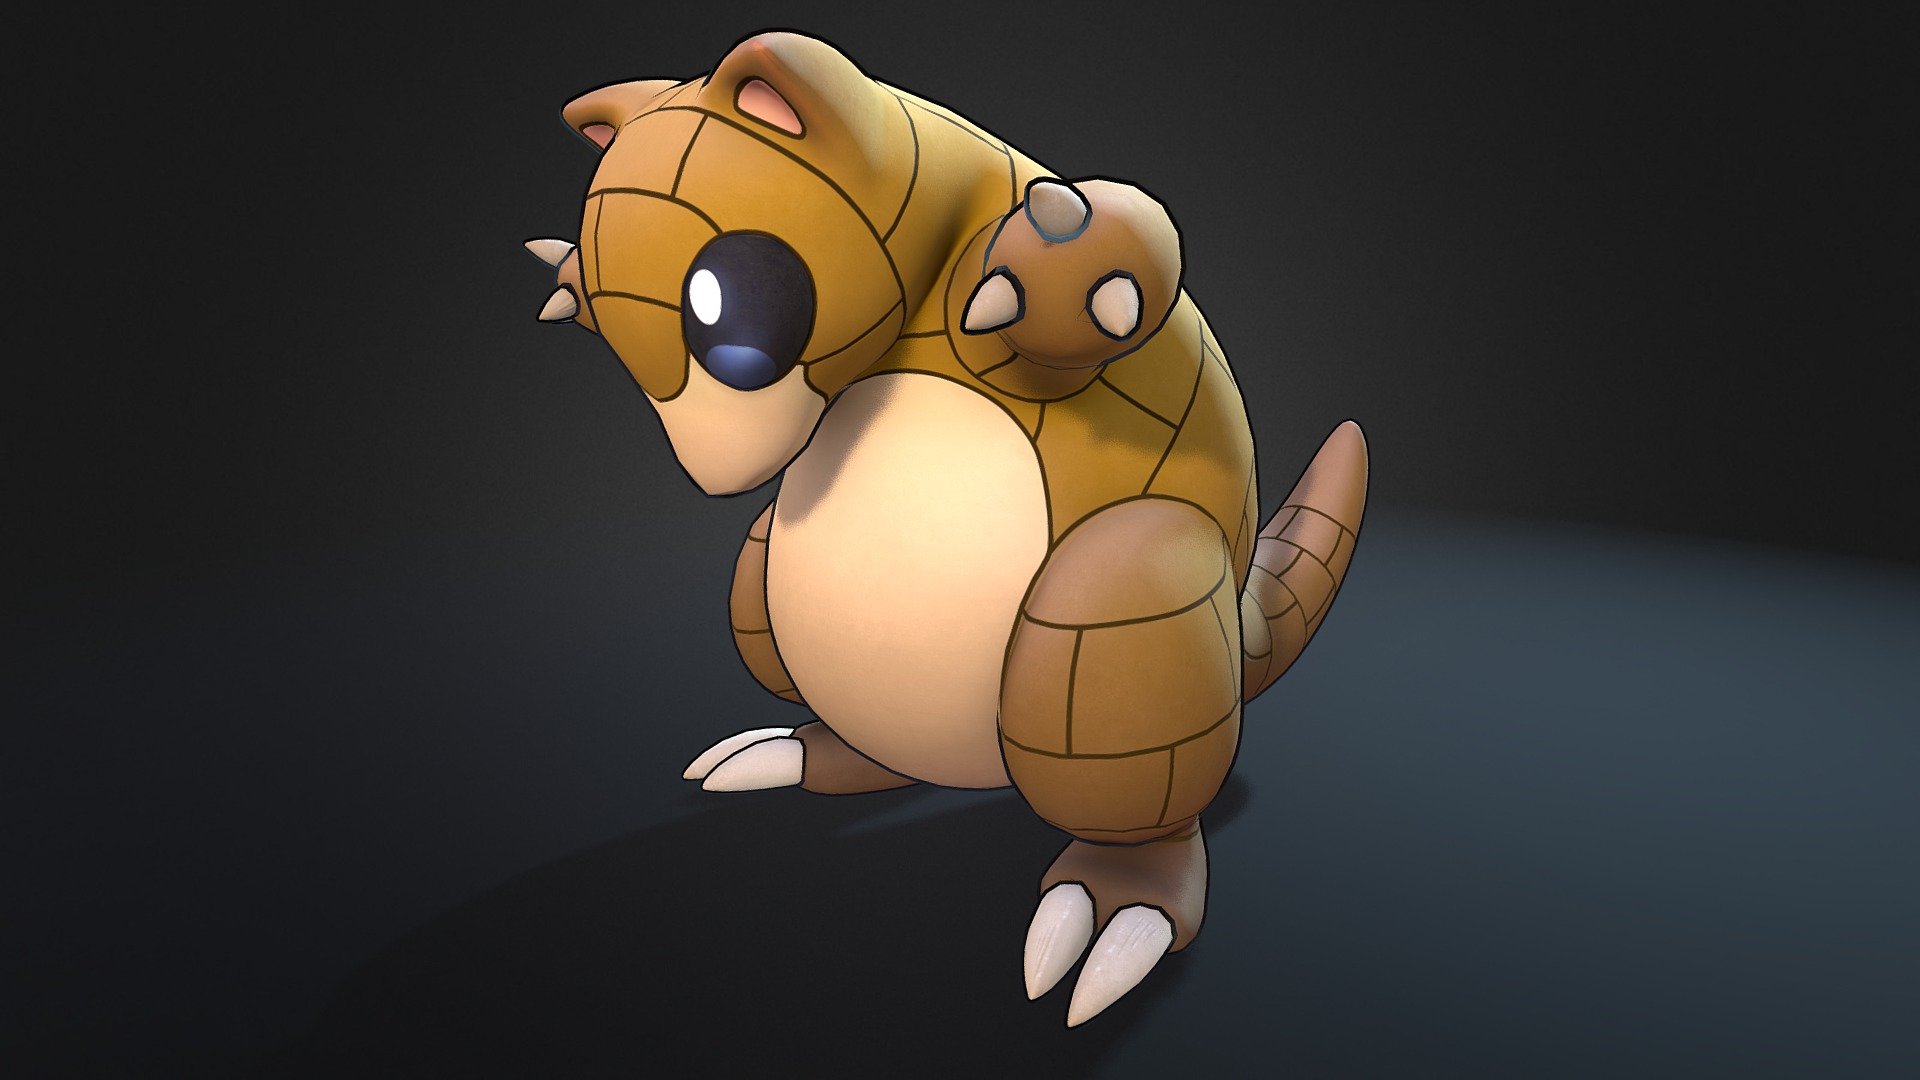 Number 19 - Sandshrew Pokemon - 3D model by 3dlogicus 3d model